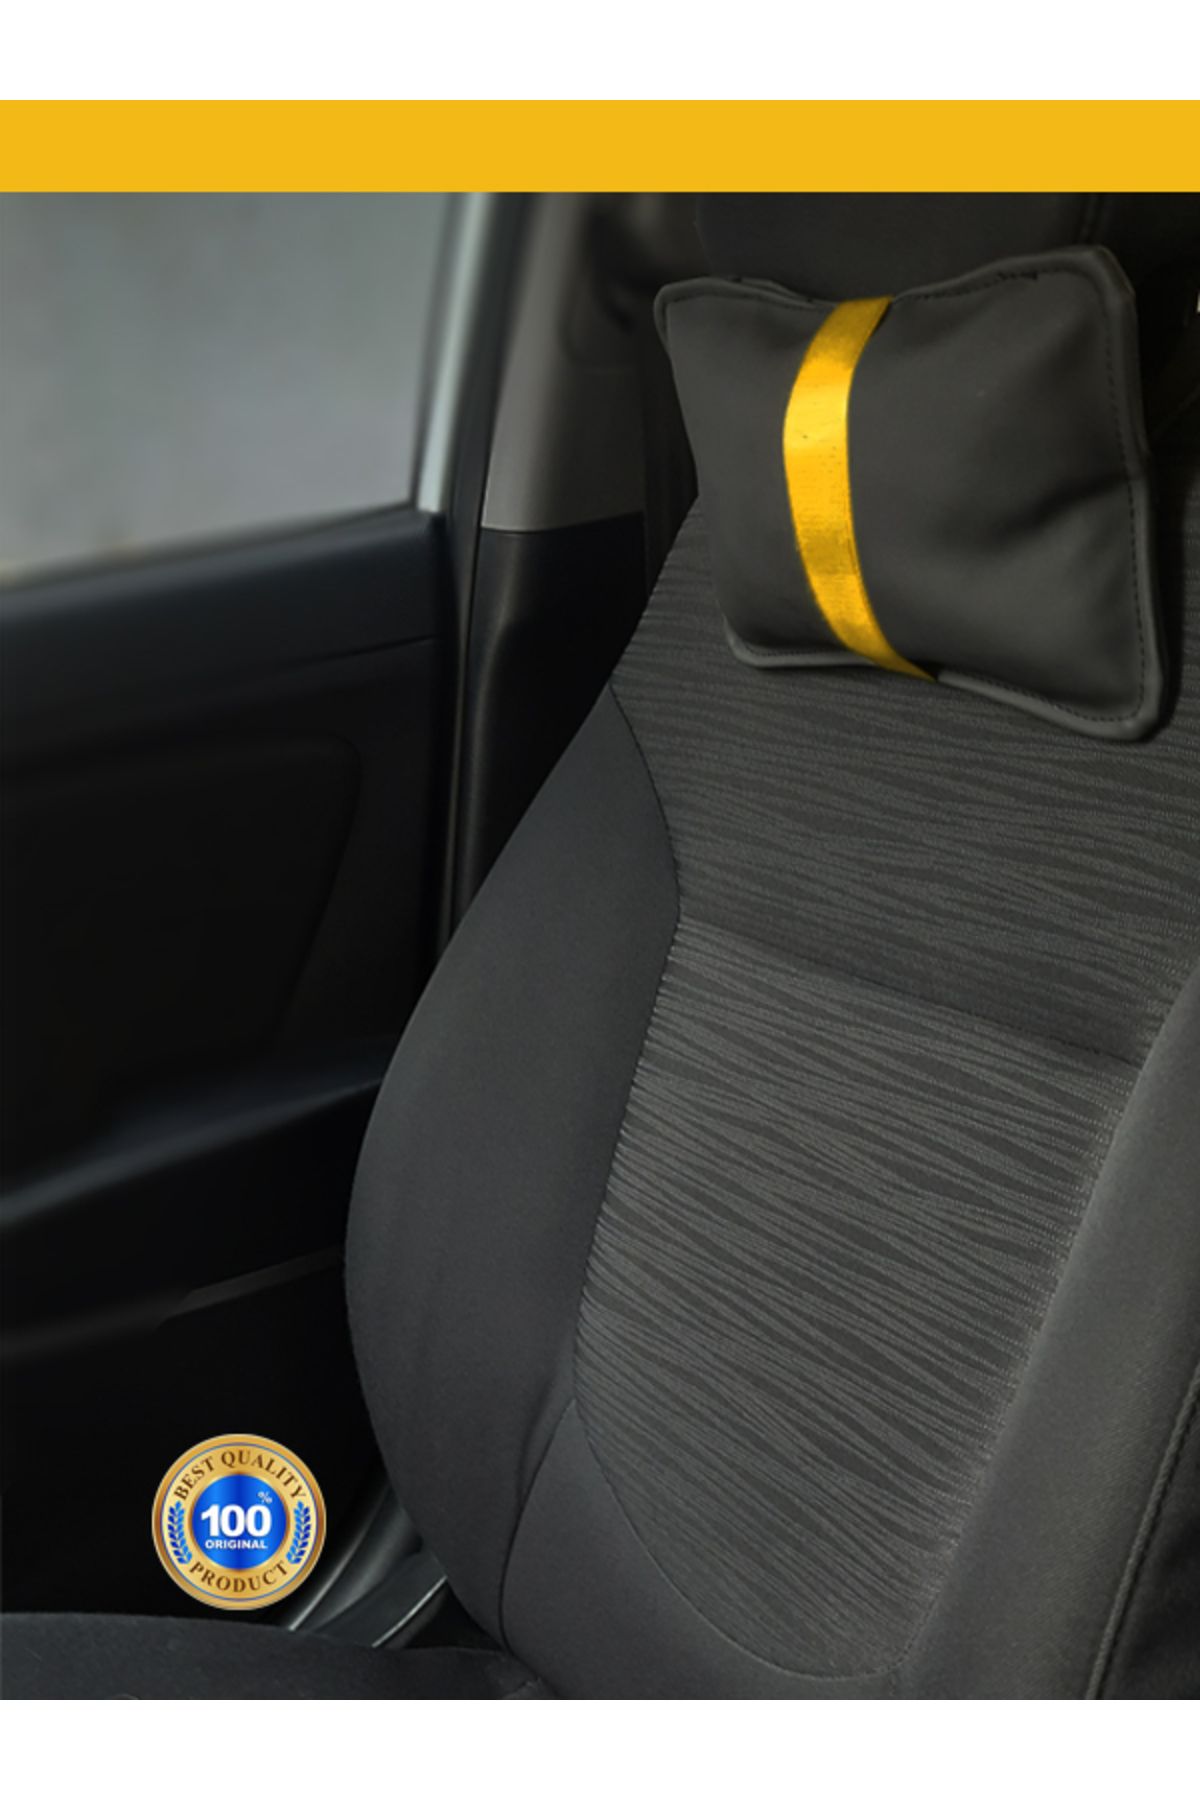 Genel Markalar Dodge Nitro Oto Koltuk Boyun Yastığı Sarı Şerit 2 Adet